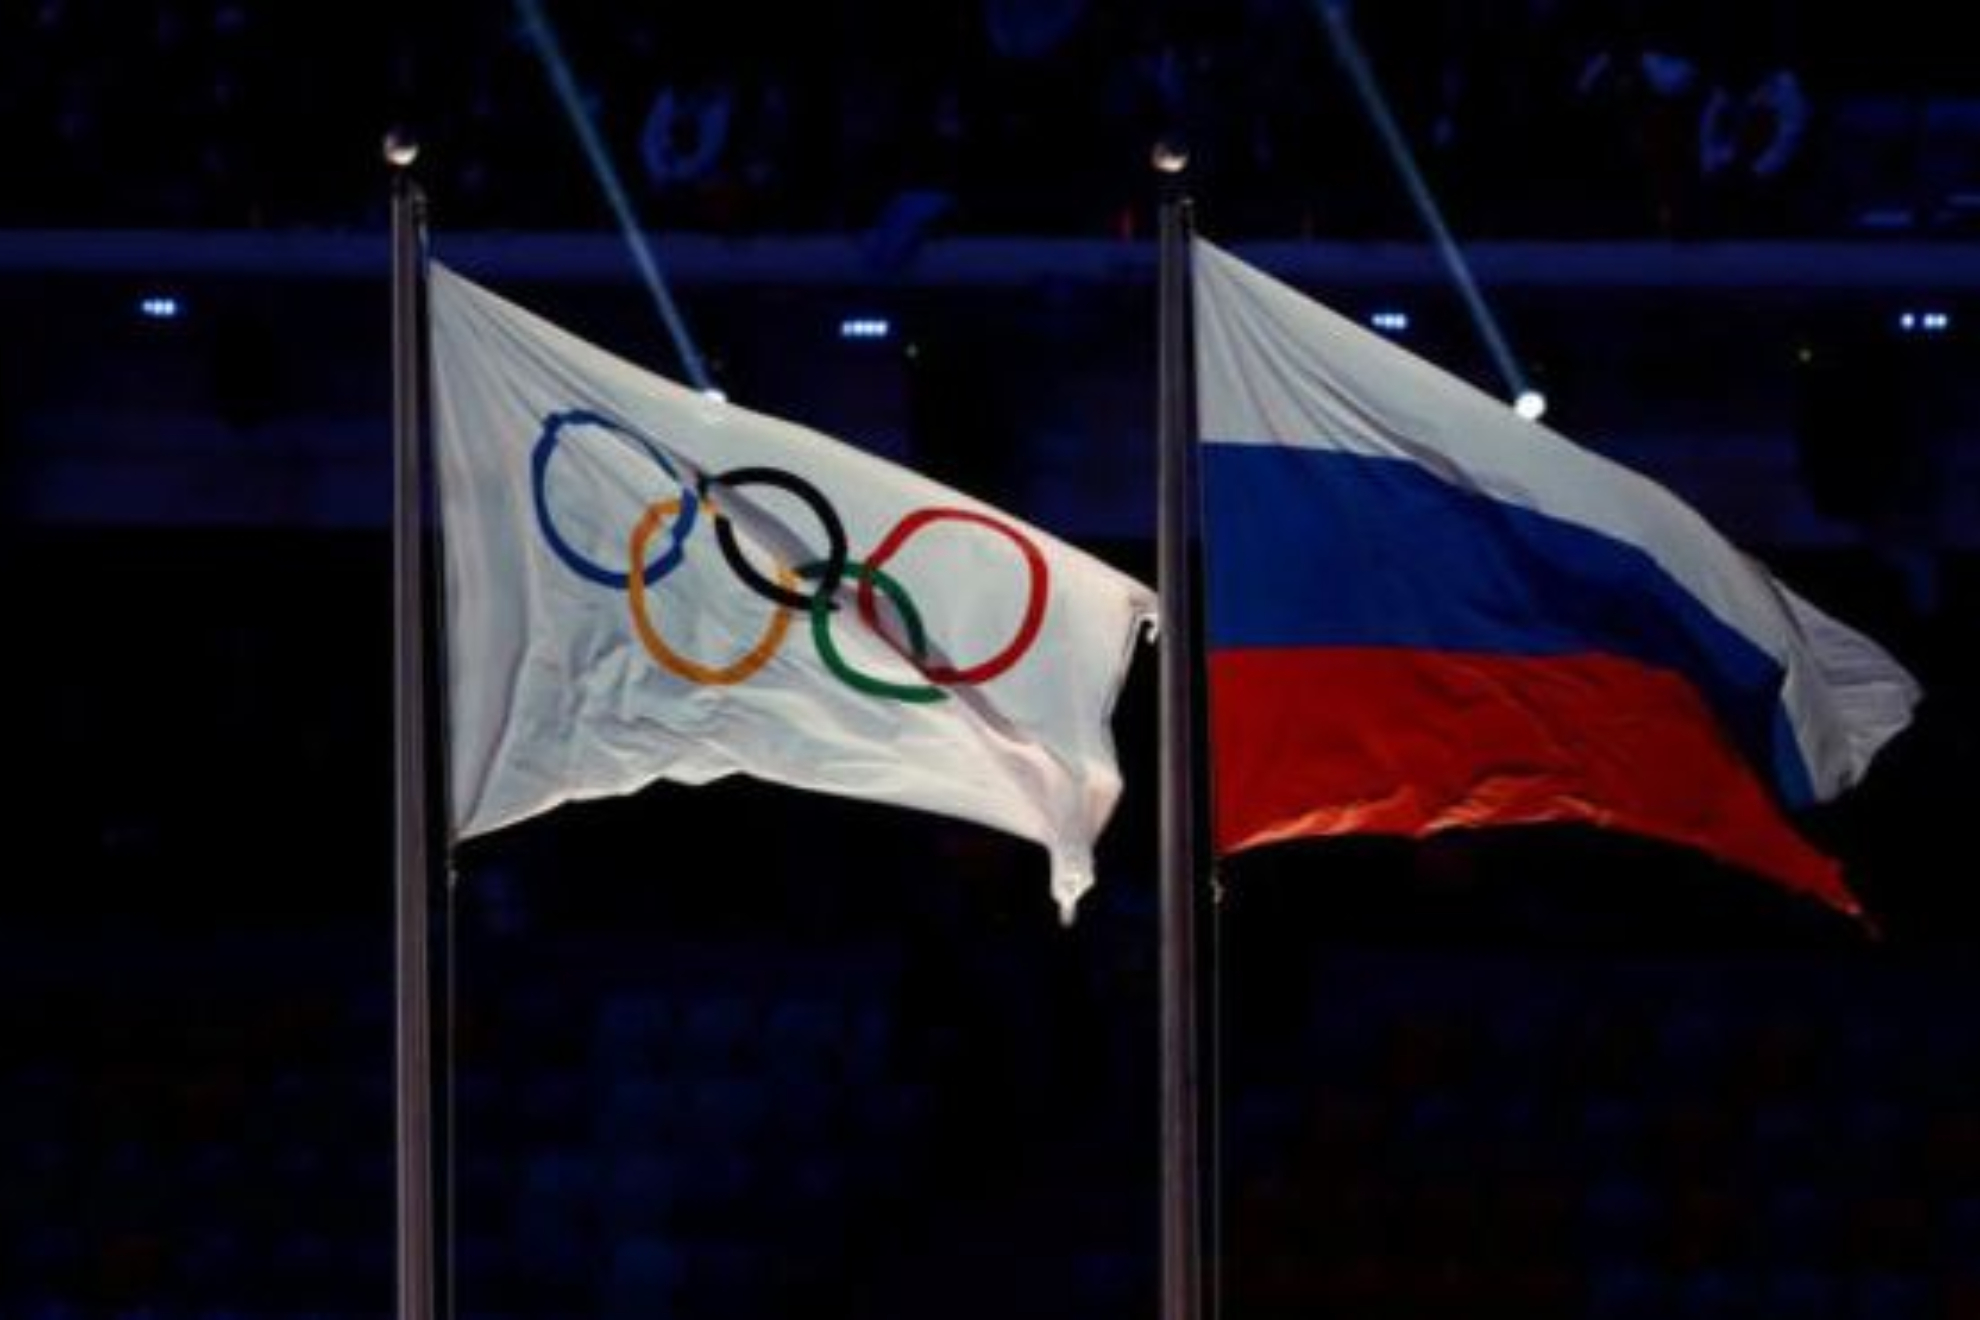 La bandera olímpica y la bandera de Rusia.